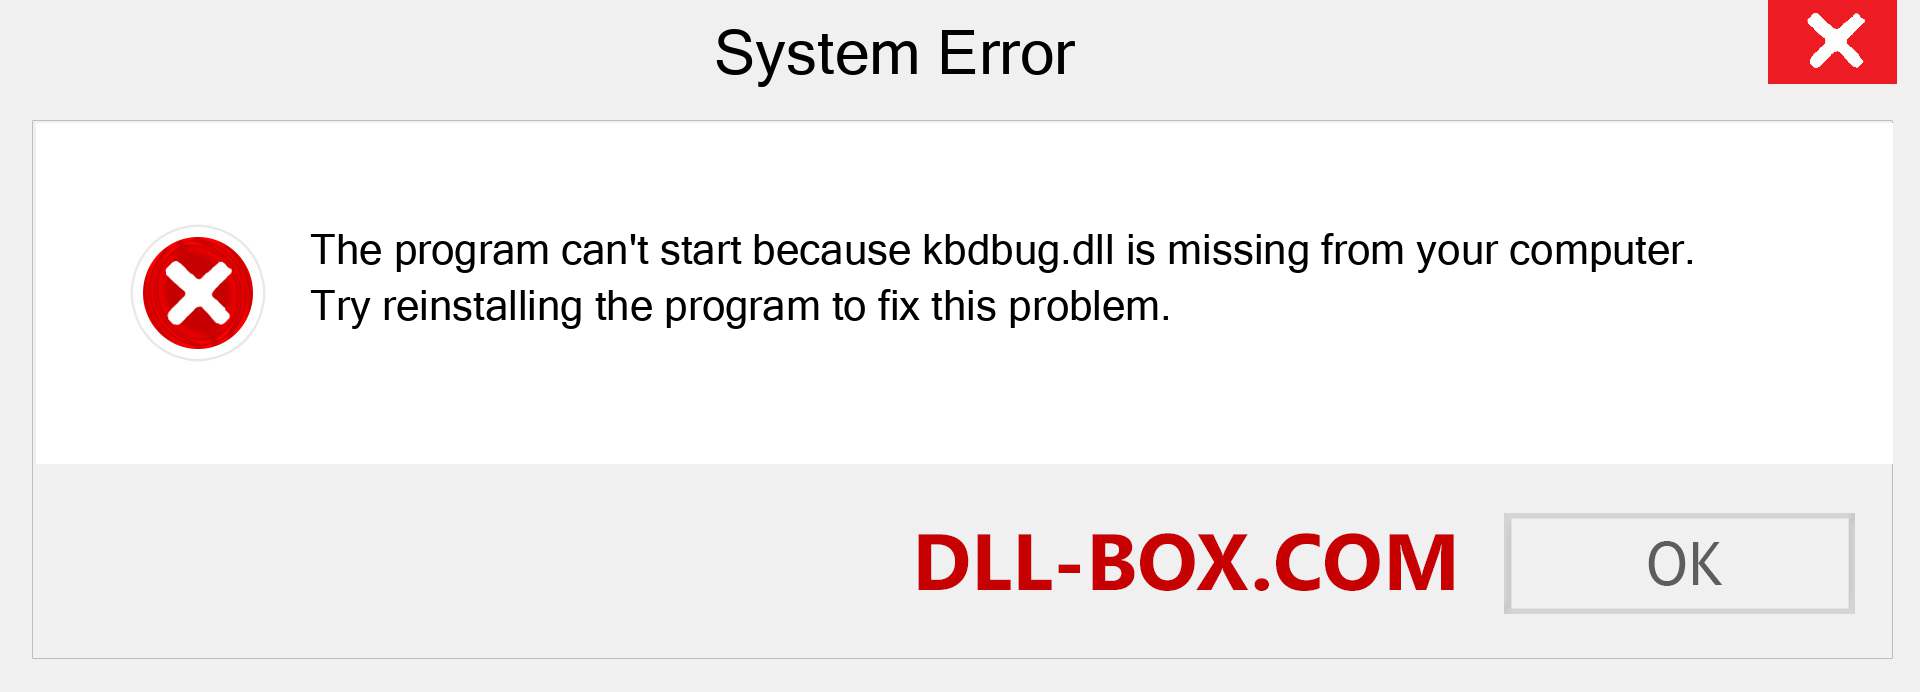  kbdbug.dll file is missing?. Download for Windows 7, 8, 10 - Fix  kbdbug dll Missing Error on Windows, photos, images